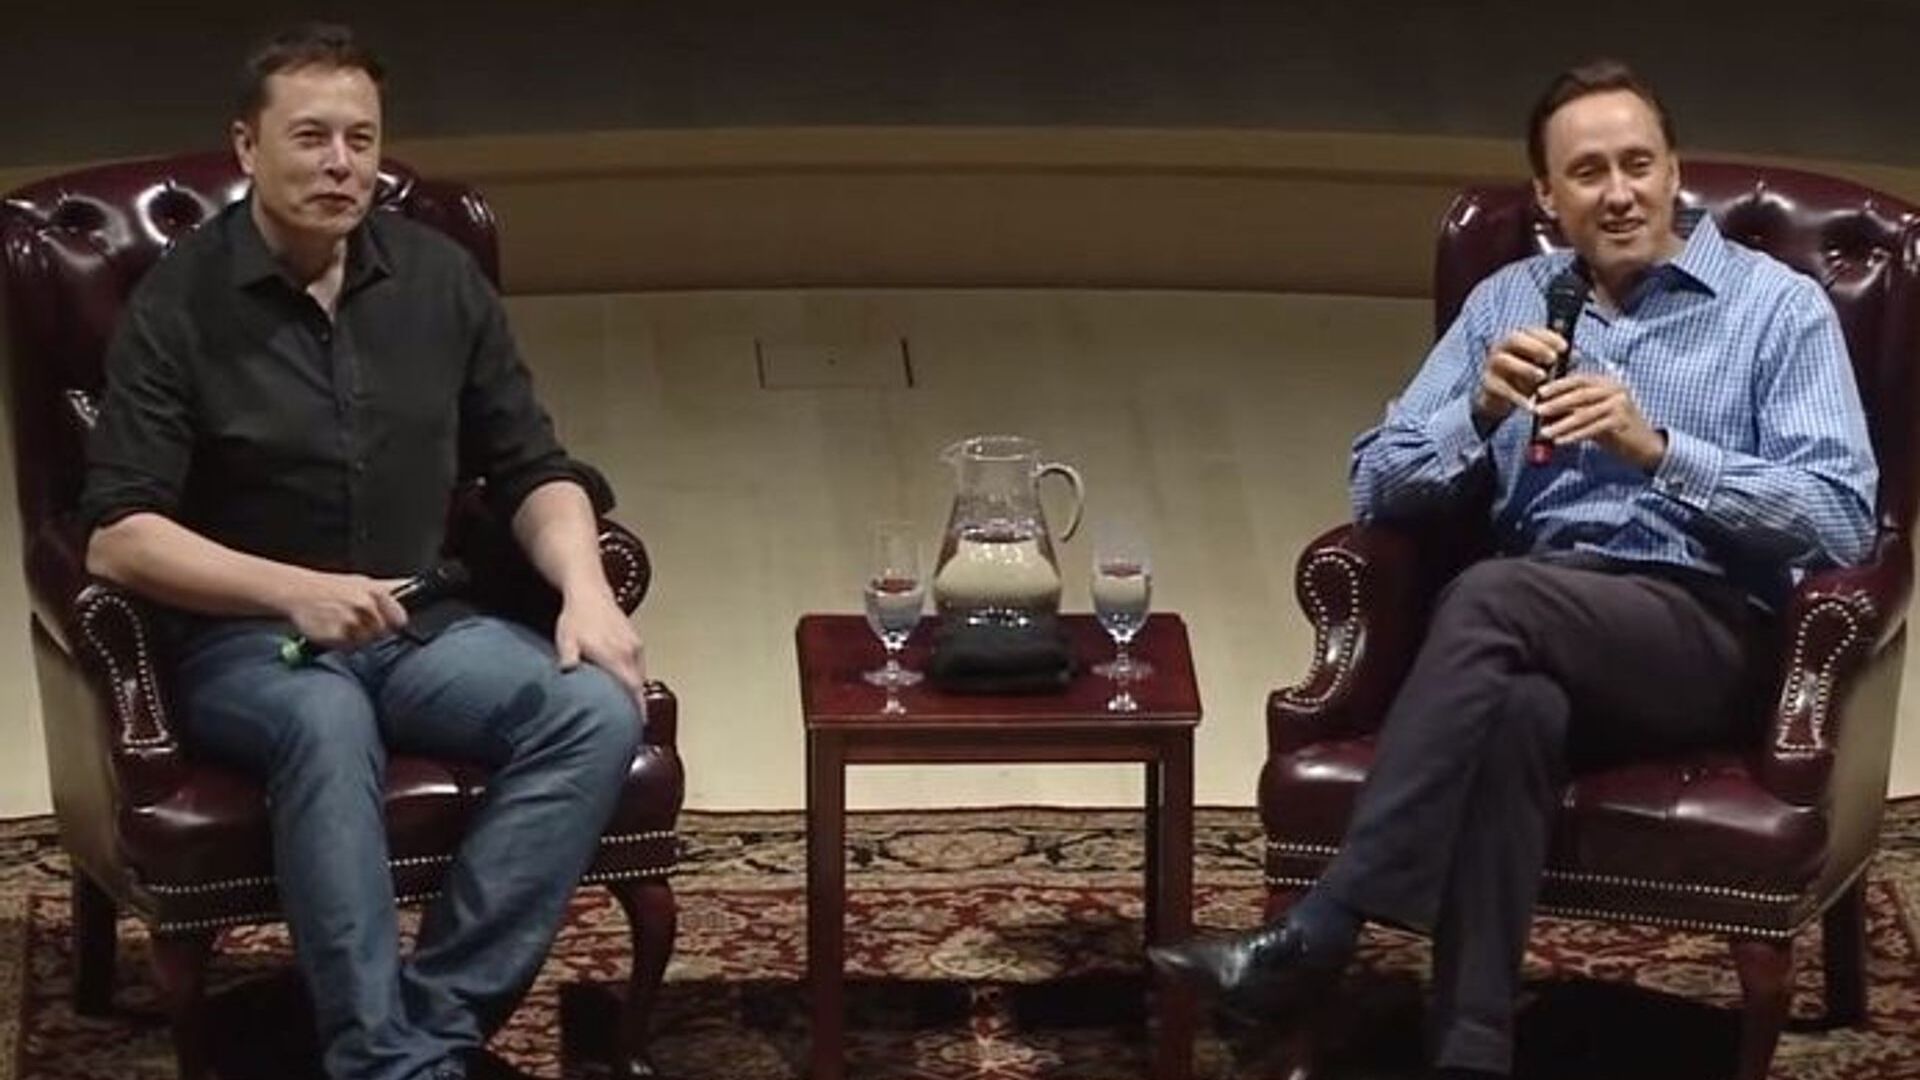 Beszélgetés a látnoki vállalkozó Elon Musk és a híres befektető, Steve Jurvetson között